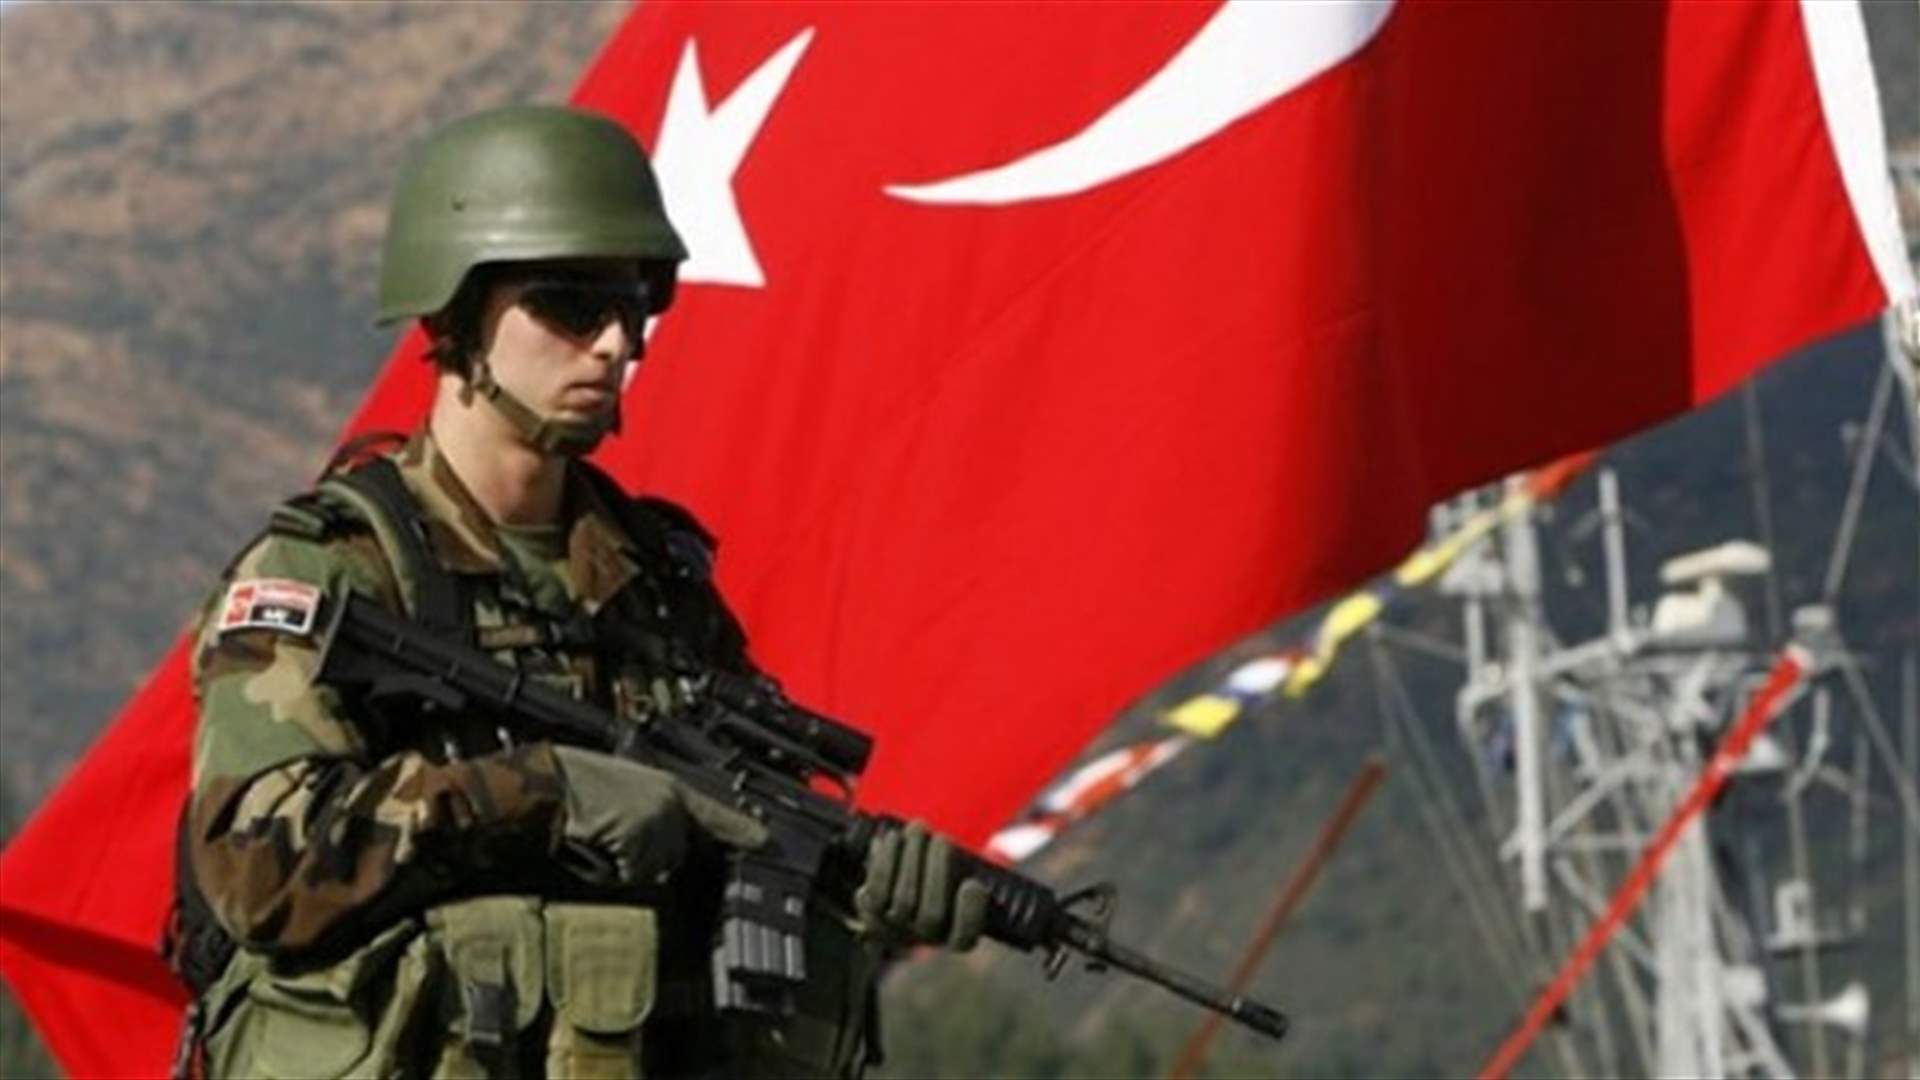 الجيش التركي يعلن عن مقاومة صلبة من قبل داعش في سوريا... وتركيا ستبقى في بعشيقة